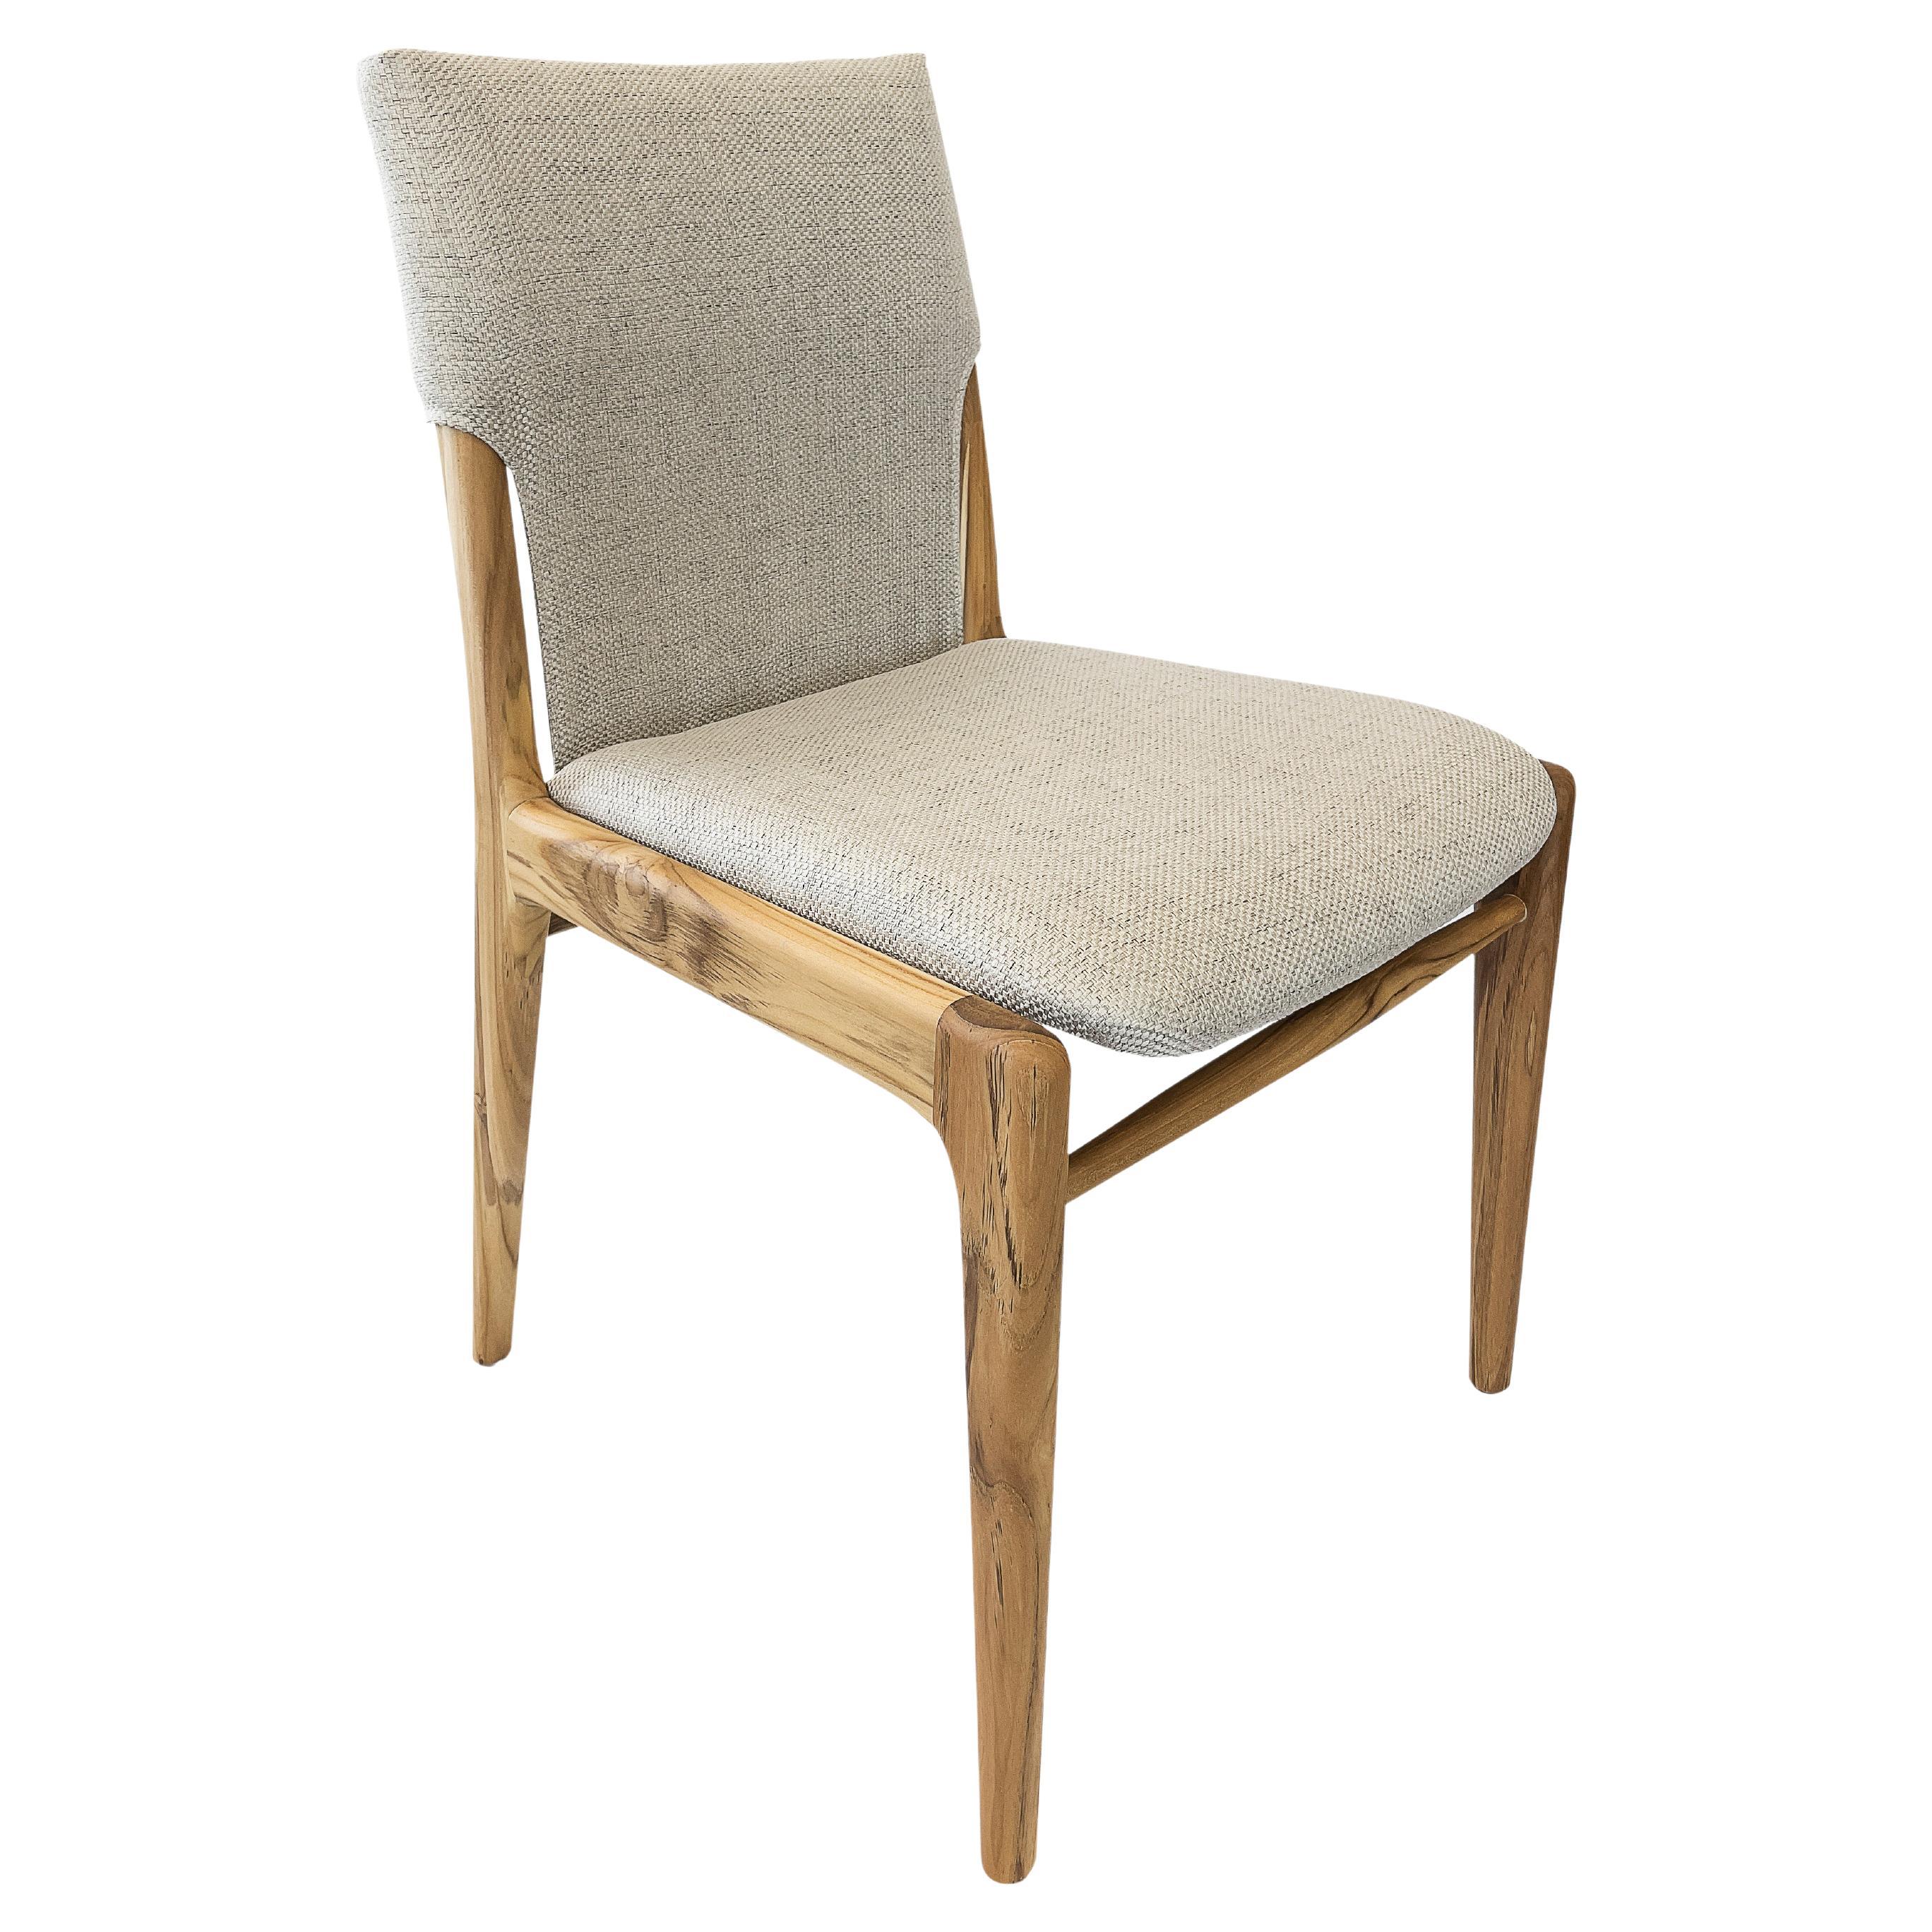 Le légendaire designer d'Uultis, M. Sergio Batista, a créé la chaise de salle à manger Tress avec un revêtement en tissu léger et une finition en bois de teck. Ses créations sont synonymes de style, d'élégance, de confort et de qualité. Avec la